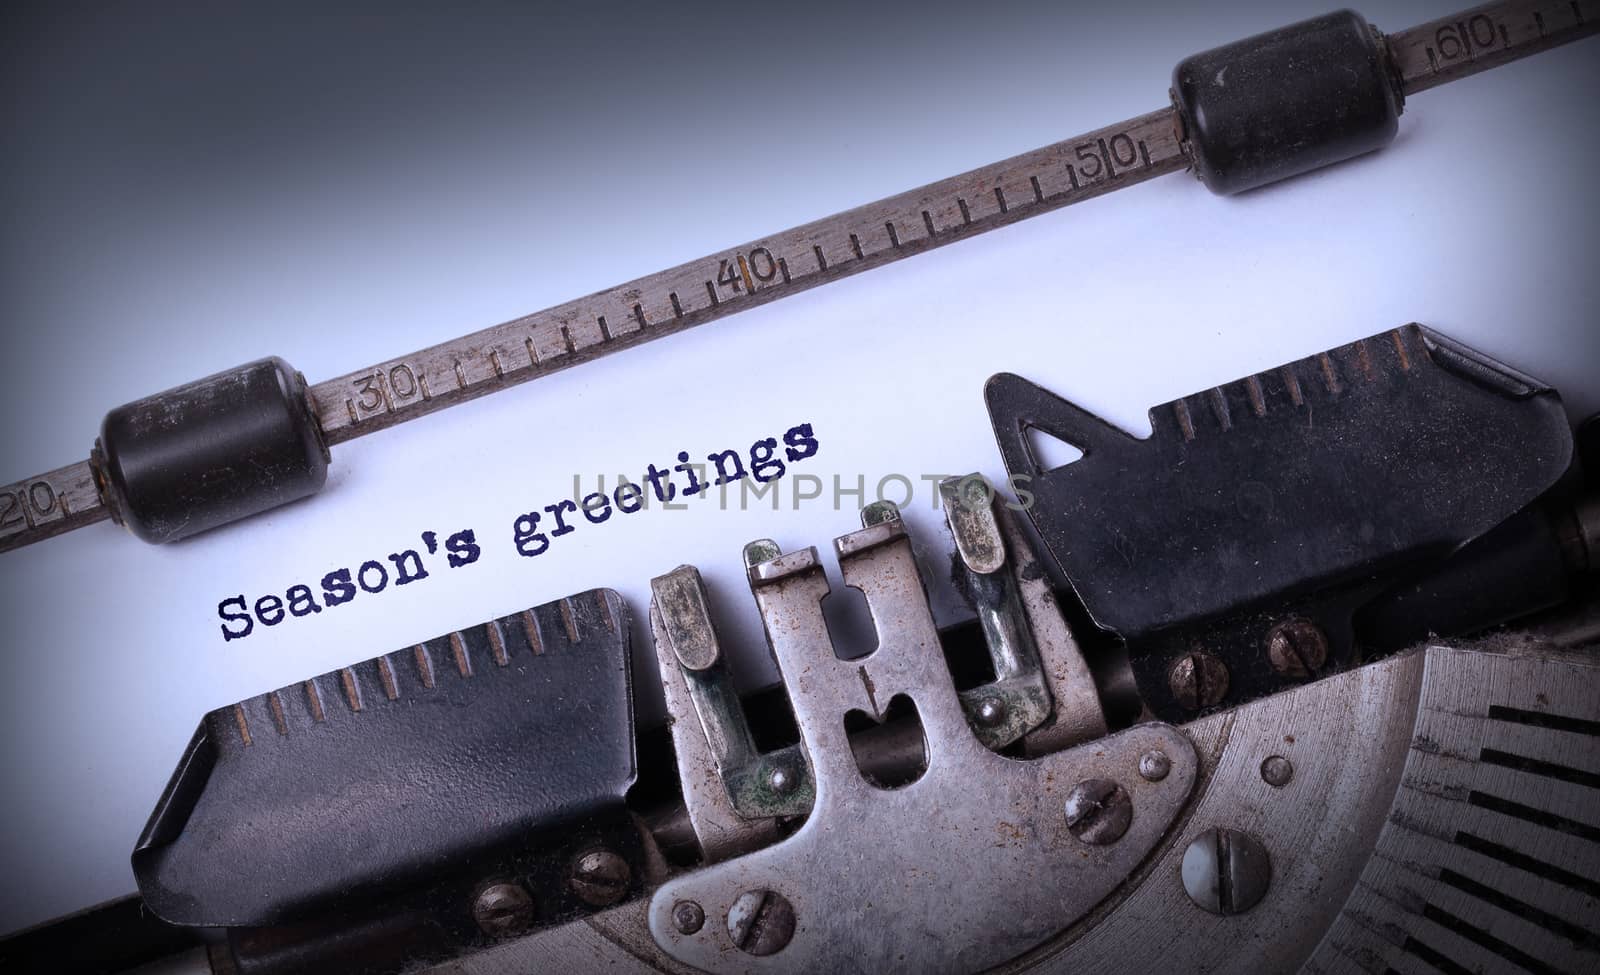 Season's greetings, written on an old typewriter, vintage